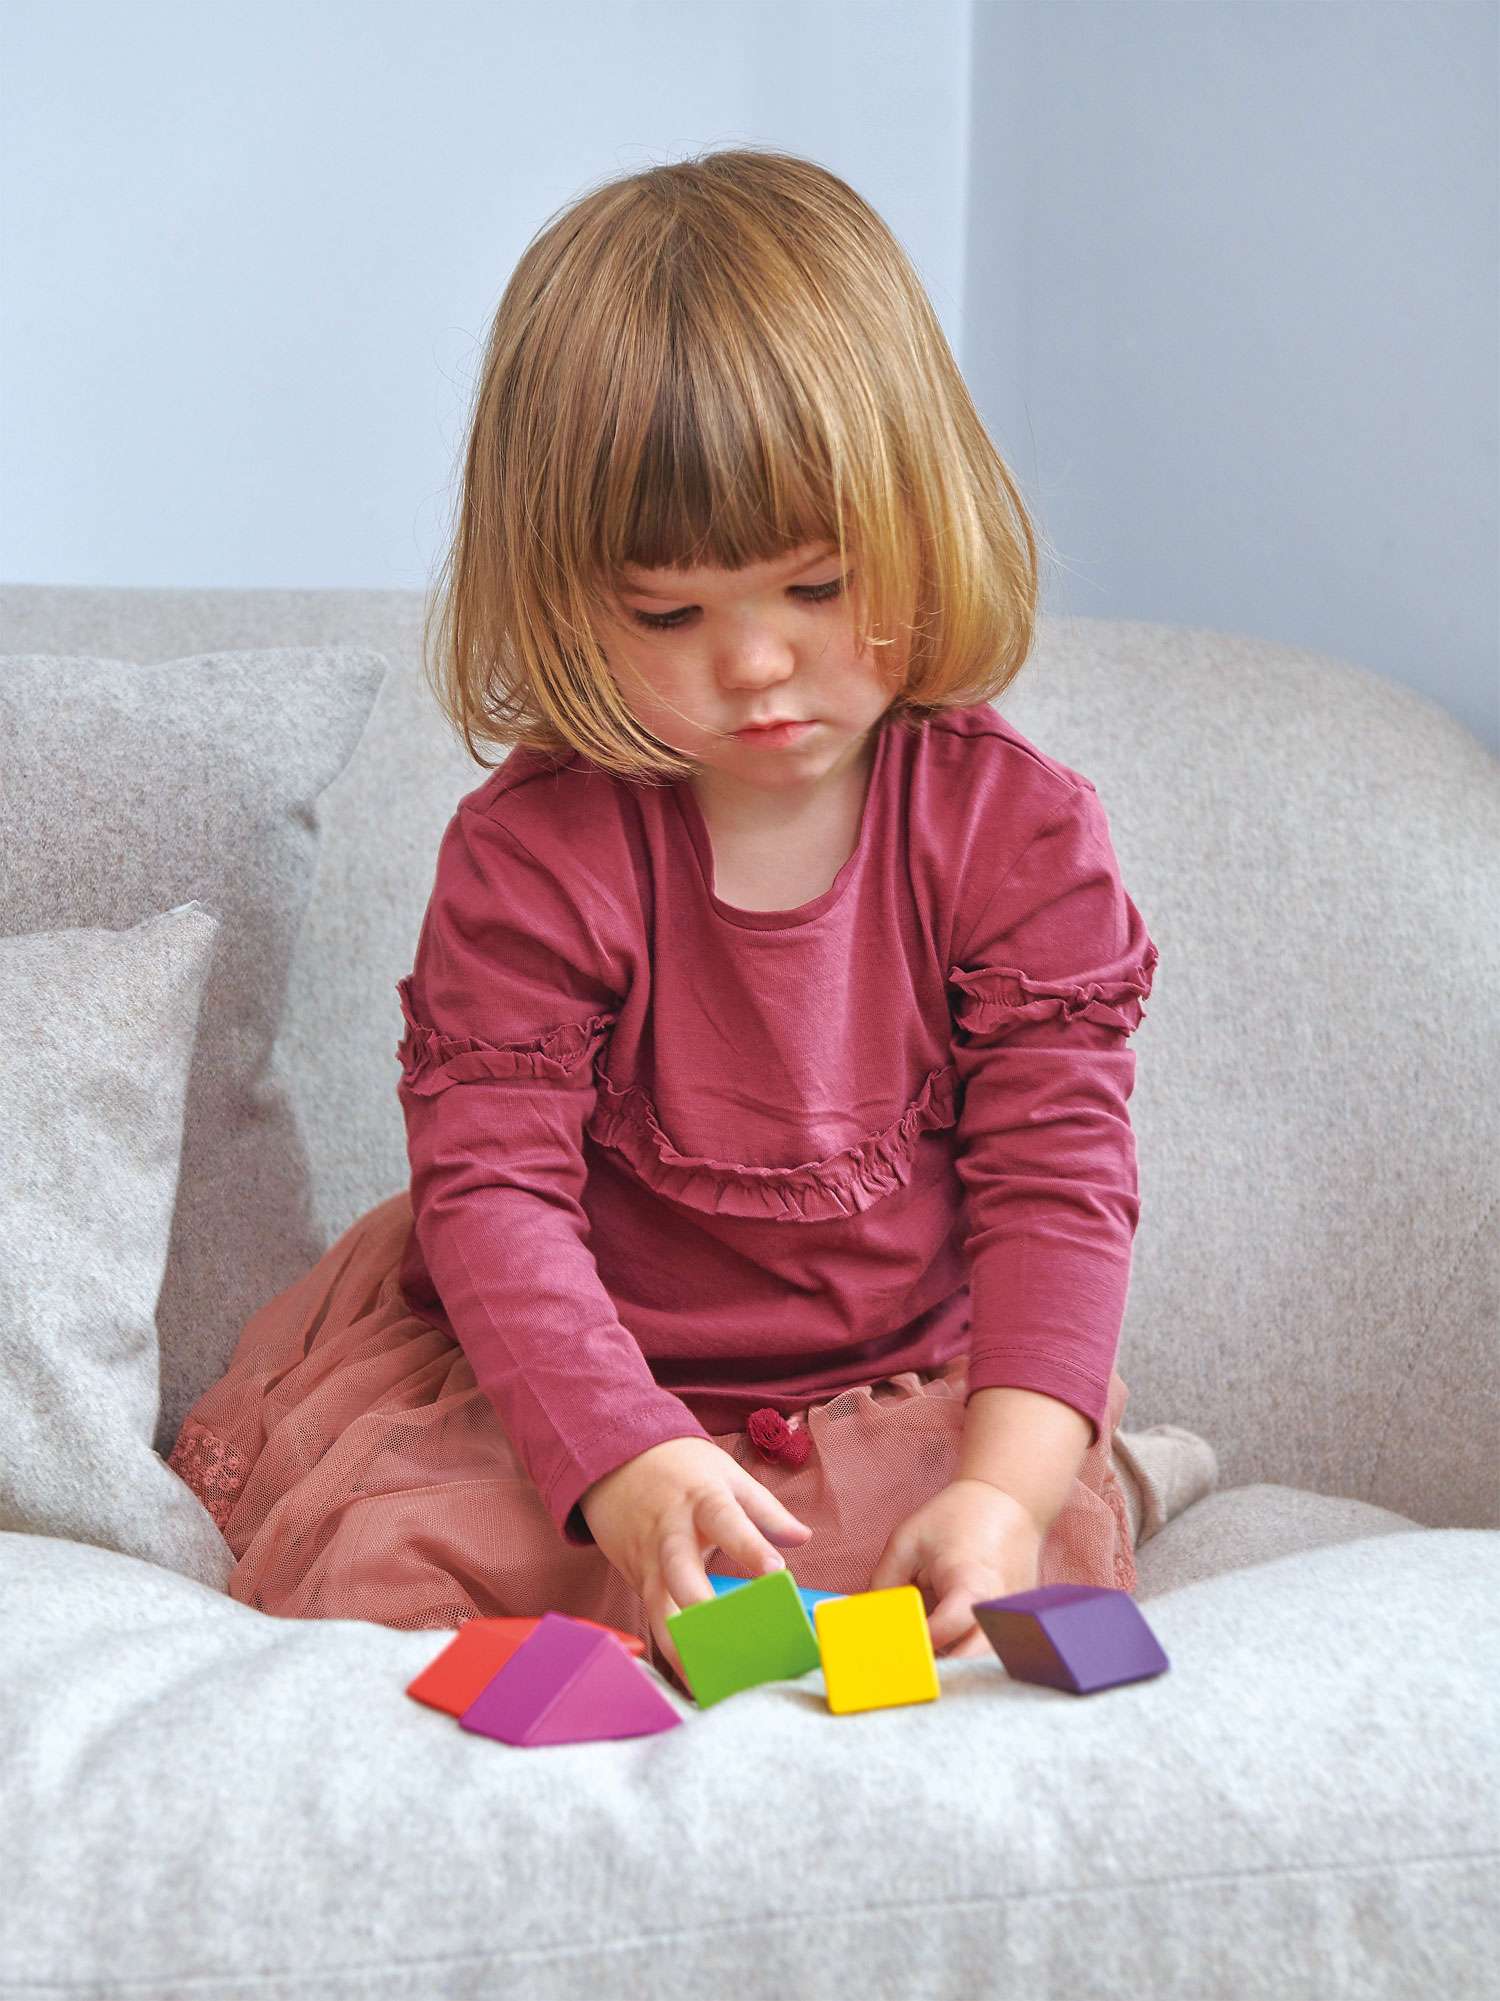 Tender Leaf Toys ของเล่นไม้ ของเล่นเสริมพัฒนาการ ออกแบบบล็อกแม่เหล็ก Designer Magblocs